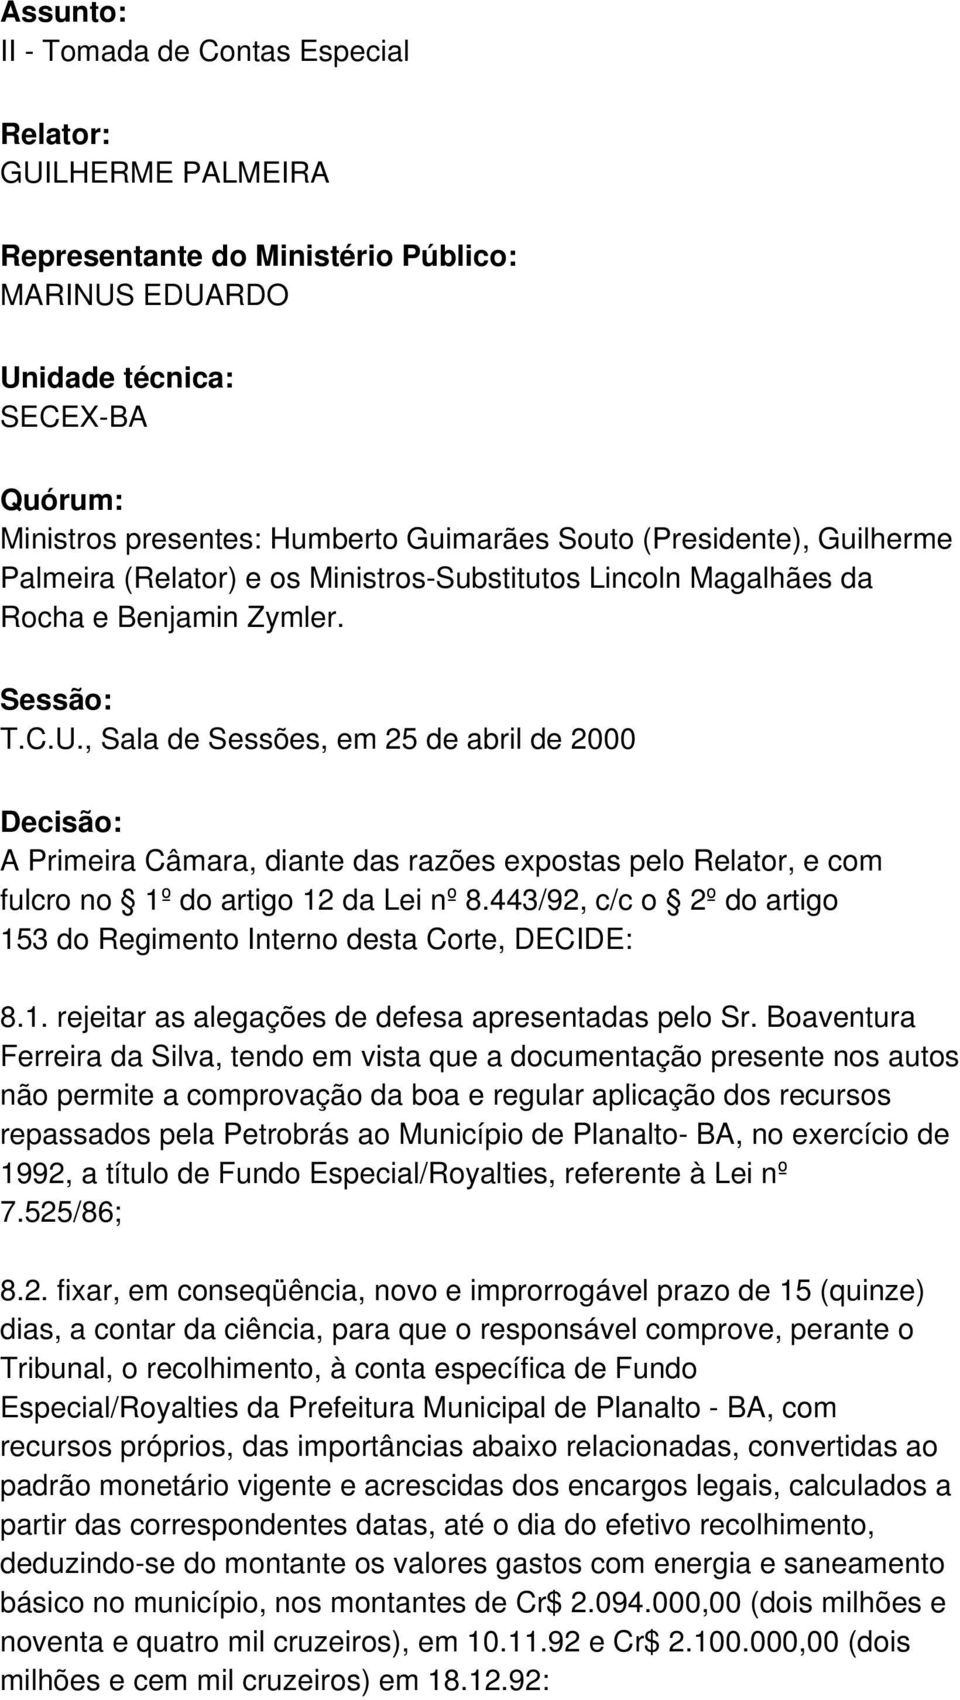 , Sala de Sessões, em 25 de abril de 2000 Decisão: A Primeira Câmara, diante das razões expostas pelo Relator, e com fulcro no 1º do artigo 12 da Lei nº 8.